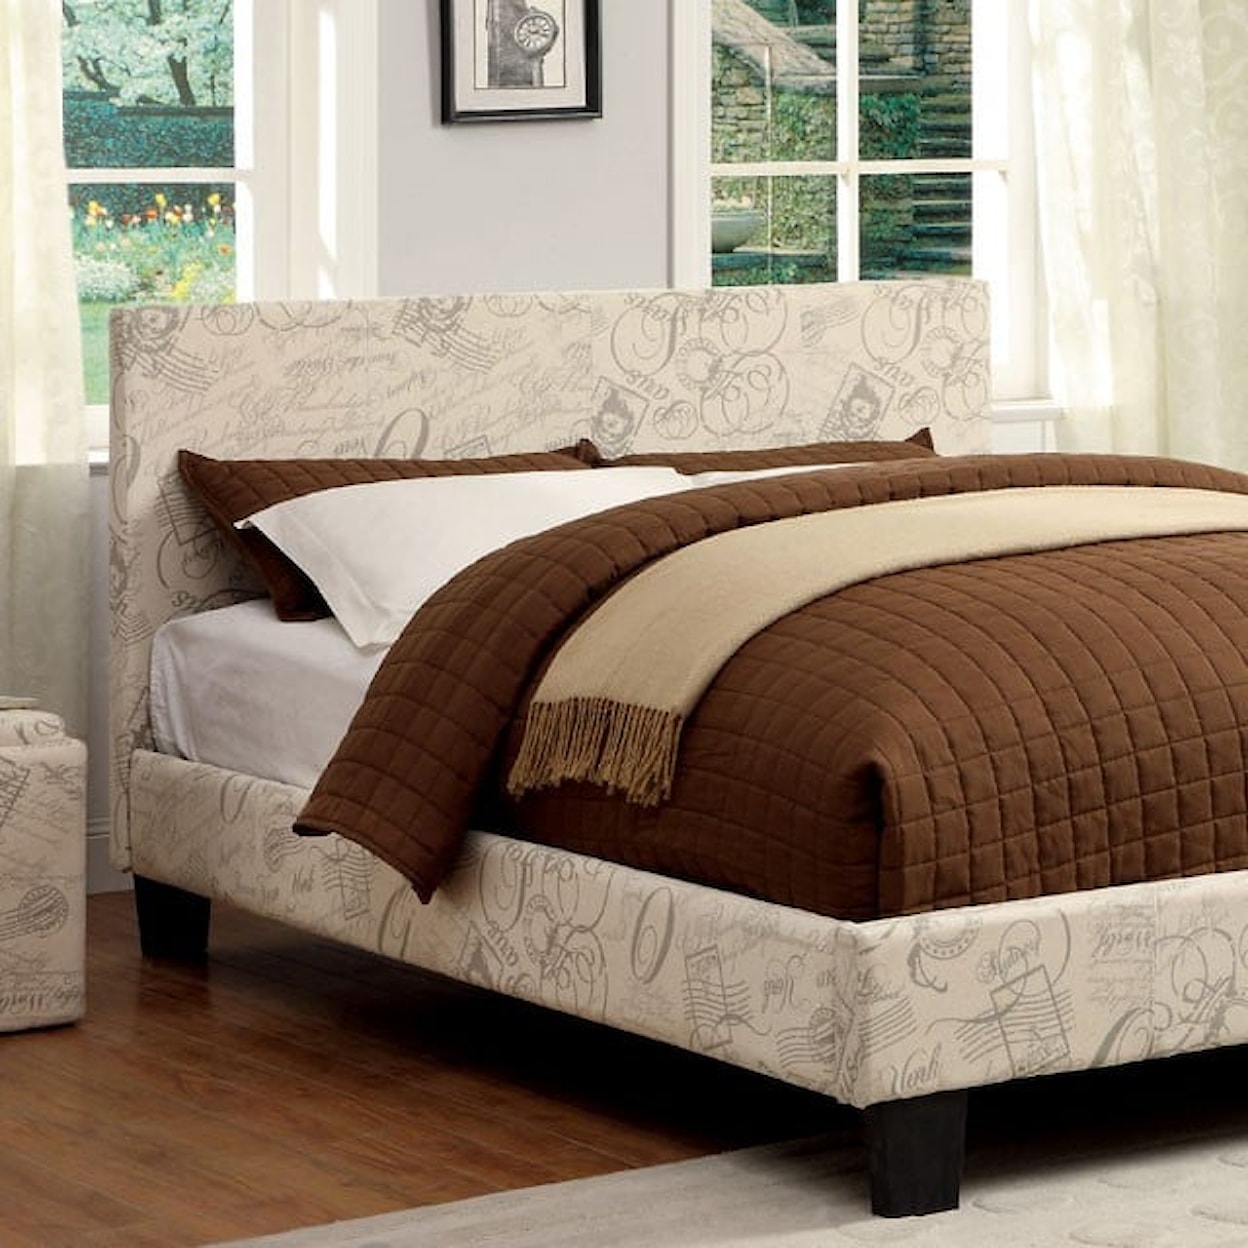 Furniture of America Winn Park Full Bed